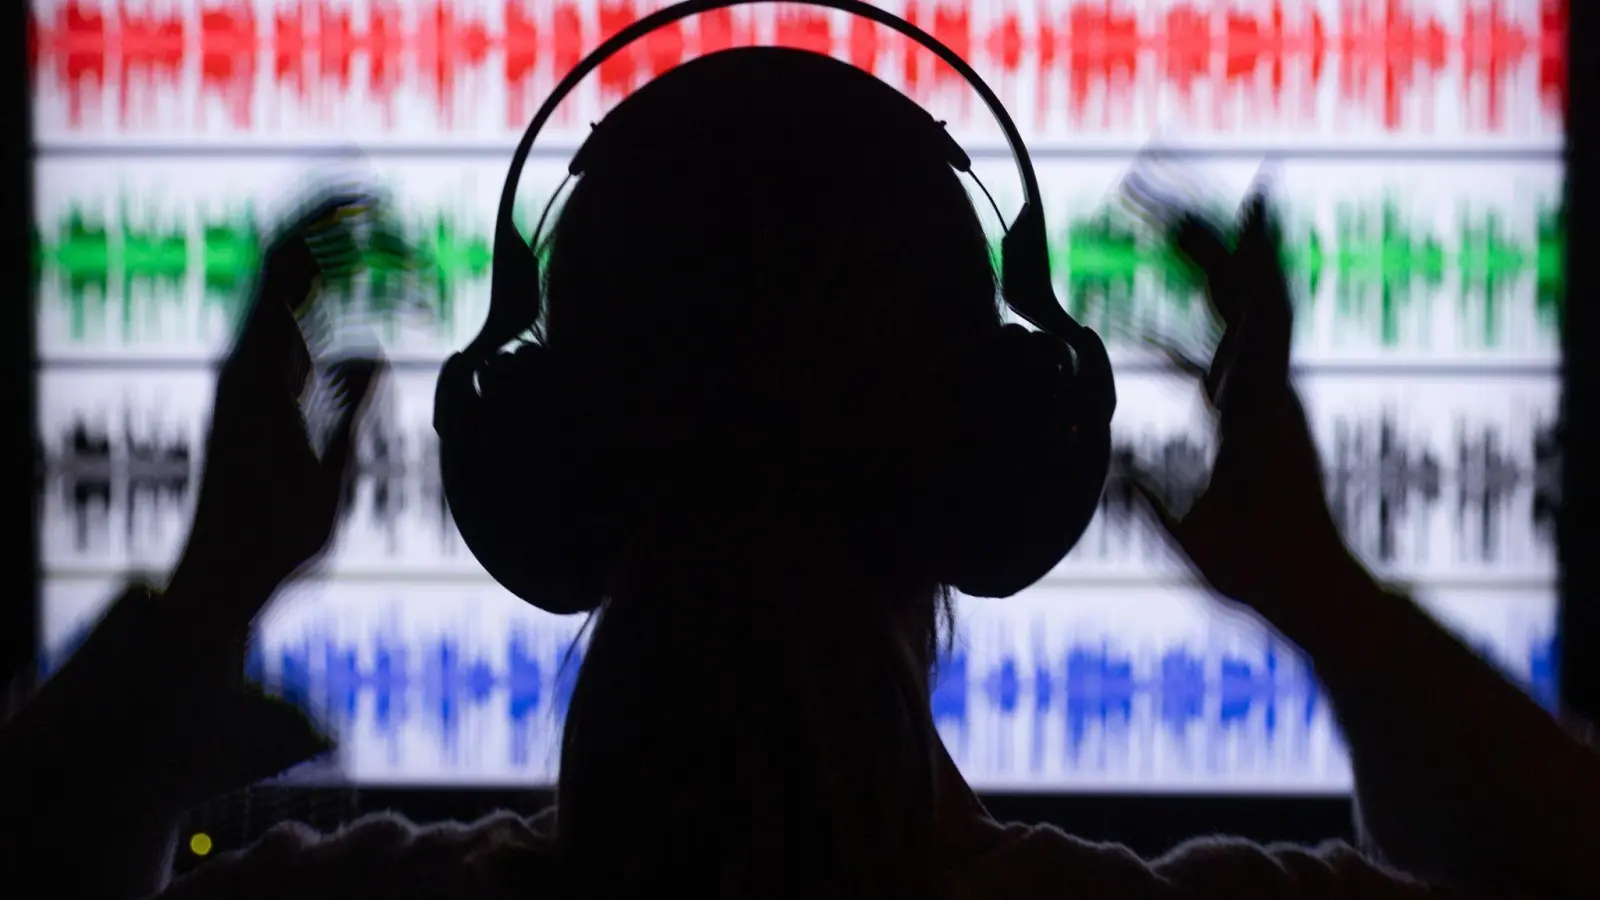 Bestimmte digital erzeugte Töne, sogenannte binaurale Beats, versprechen die Stimmung zu verbessern. Die Wirkung ist jedoch umstritten. (Foto: Jens Büttner/dpa)